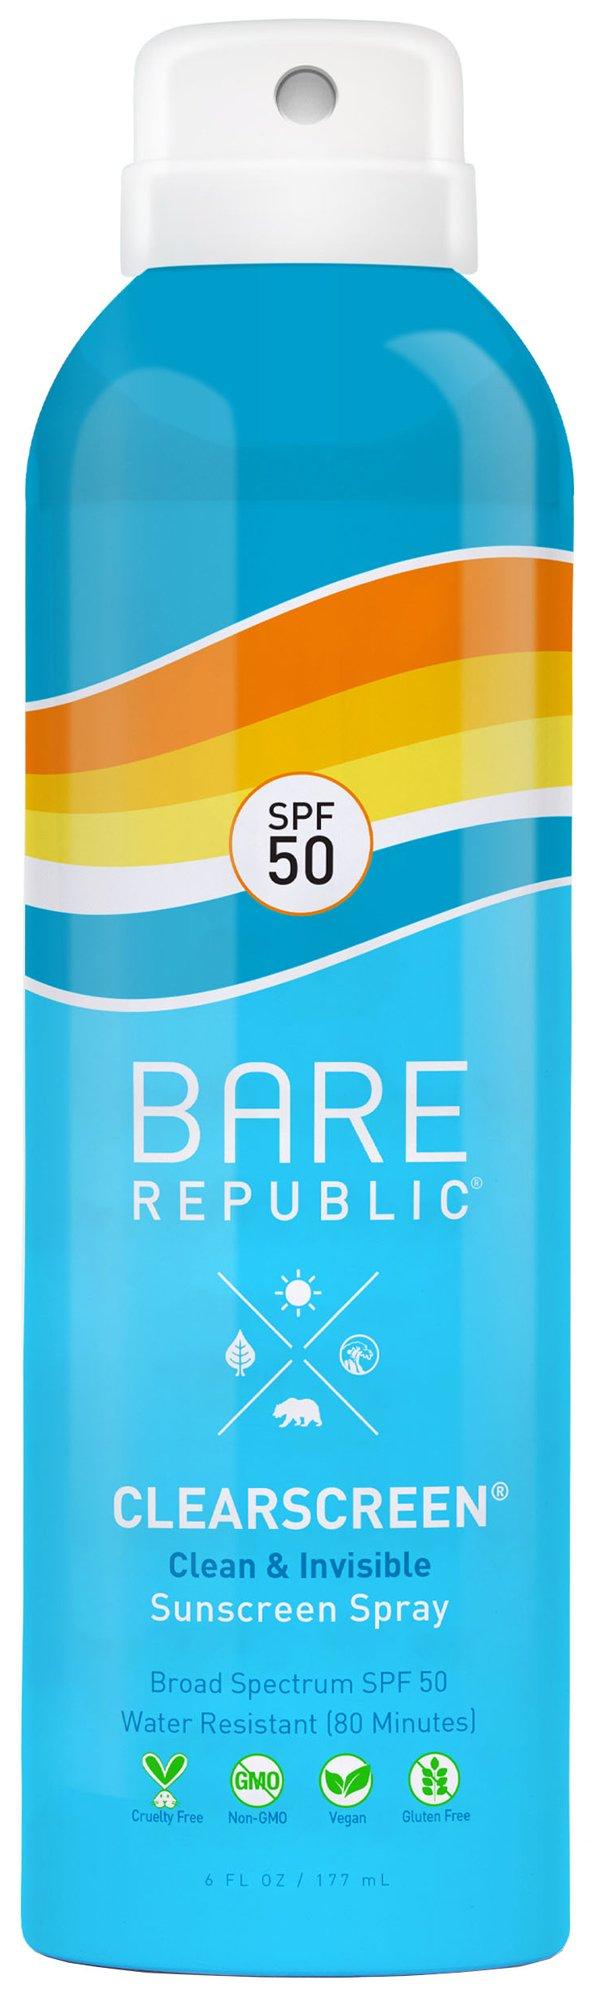 Clearscreen SPF 30 Sunscreen Spray 6 Oz.